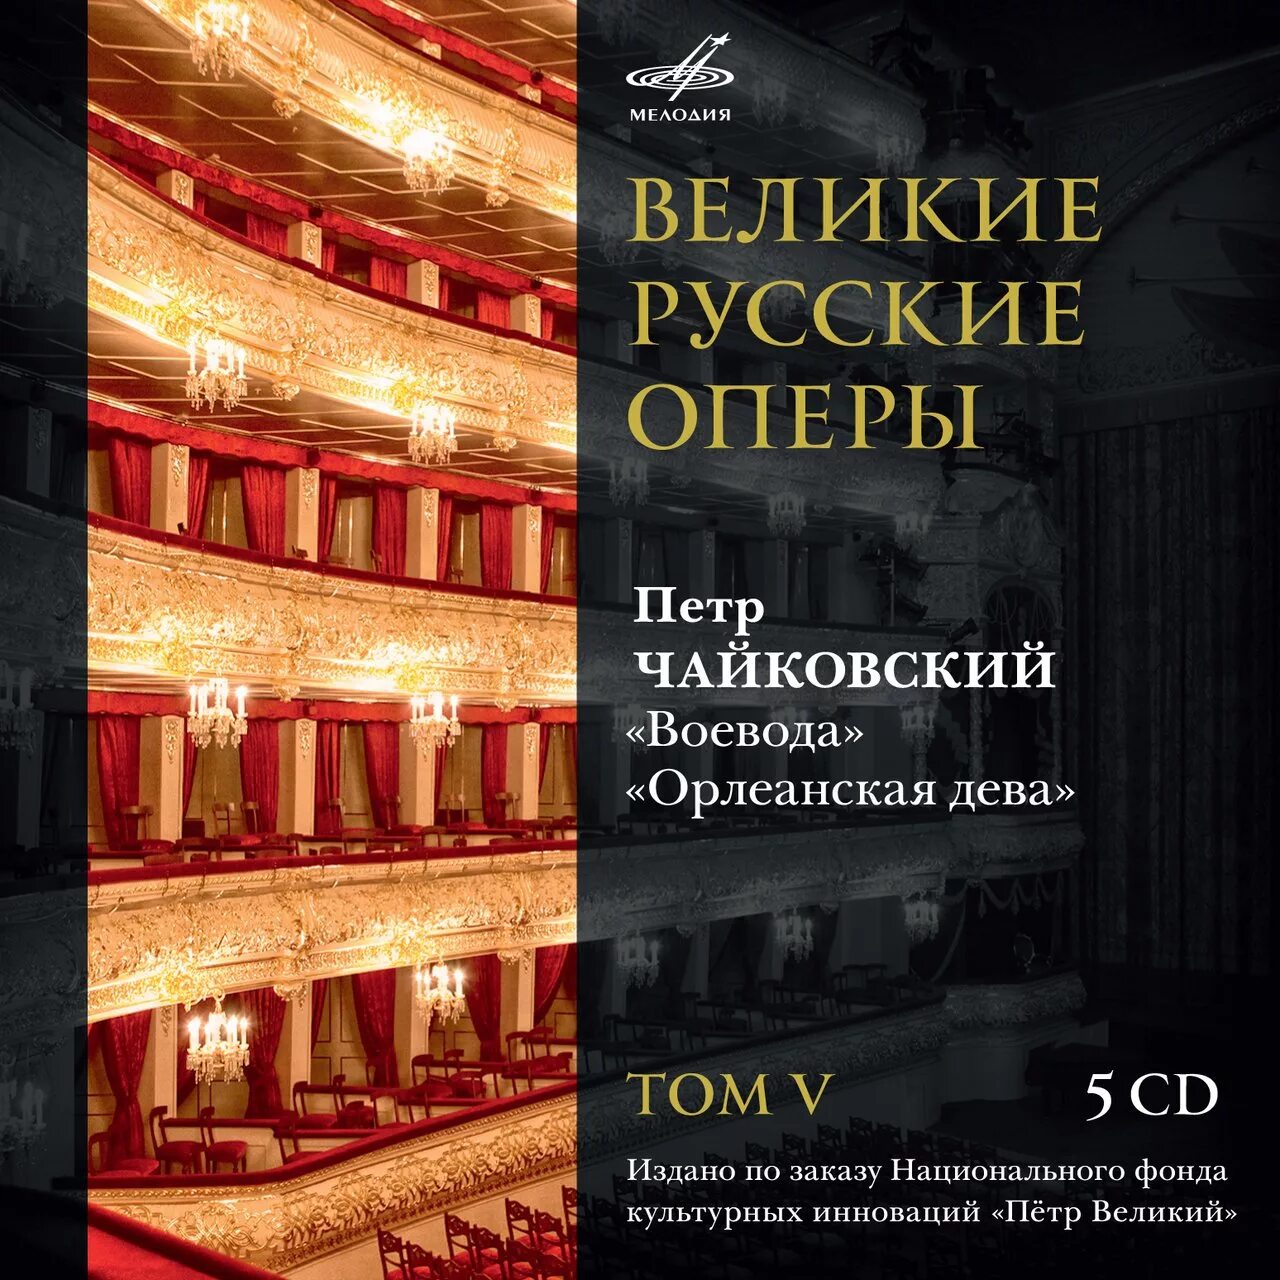 Название оперы. Великие оперы. Оперы и авторы. Известные оперы в России.